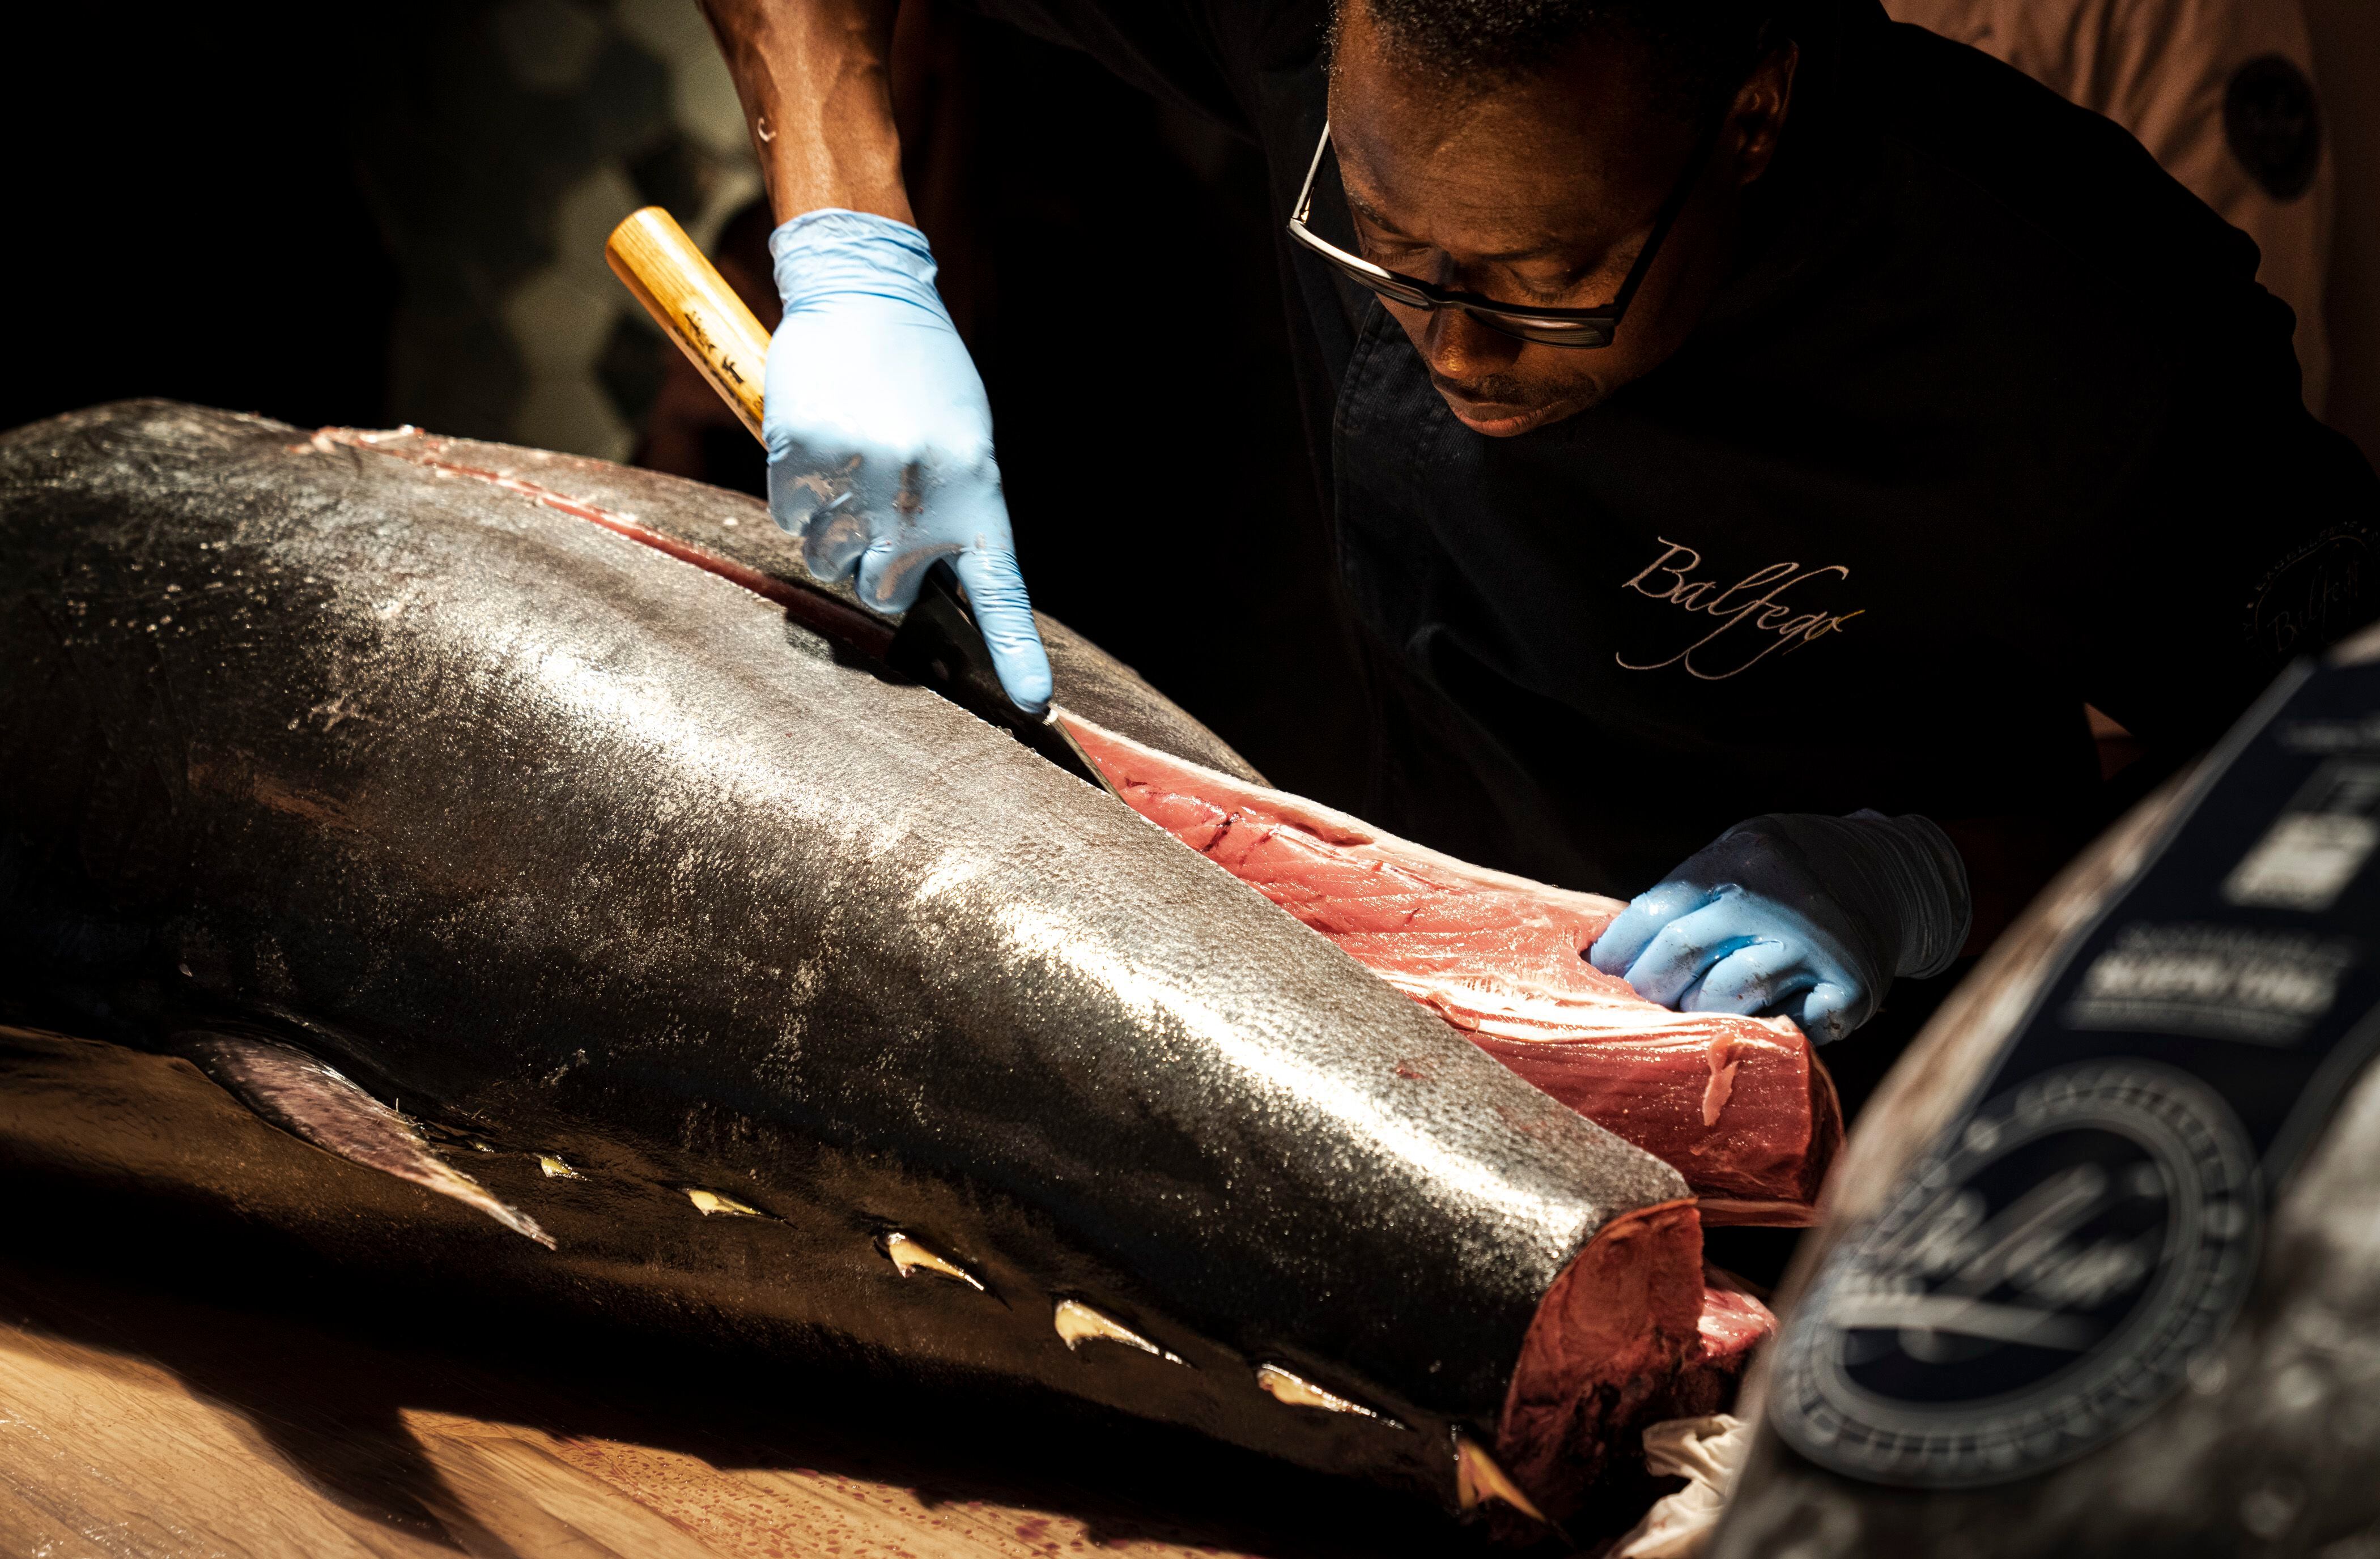 Despiece del atún en la ceremonia Kaitai del restaurante Tunateca de Barcelona. Gianluca Battista